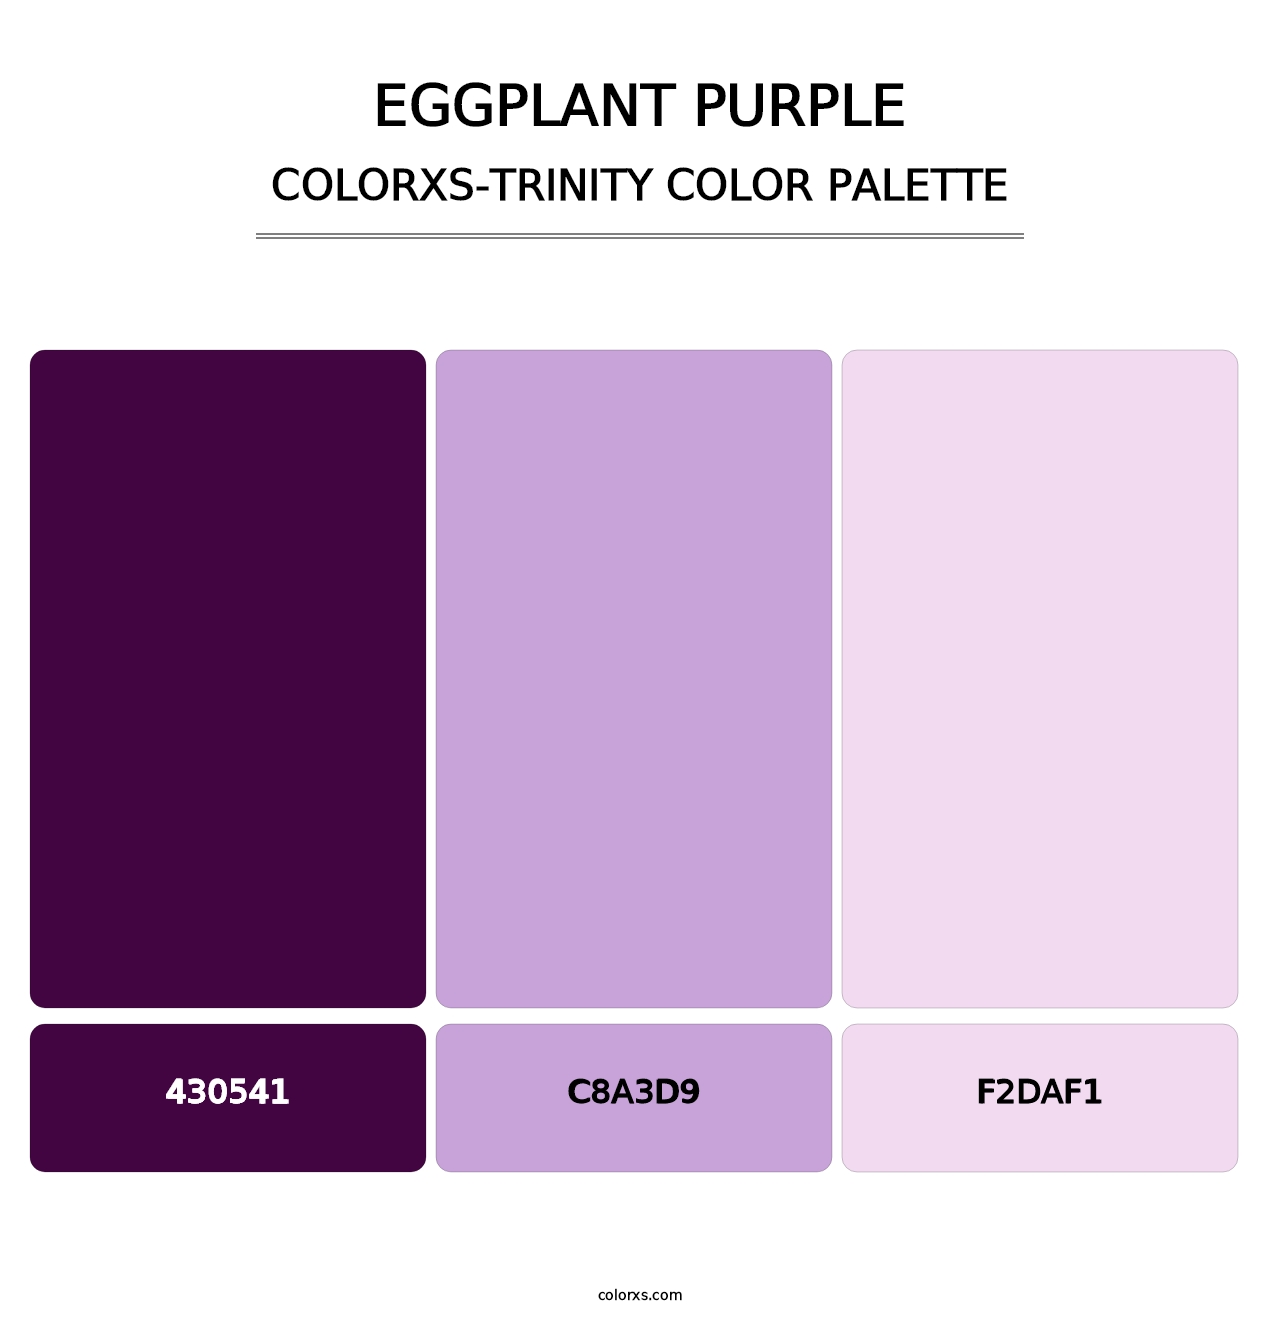 Eggplant Purple - Colorxs Trinity Palette